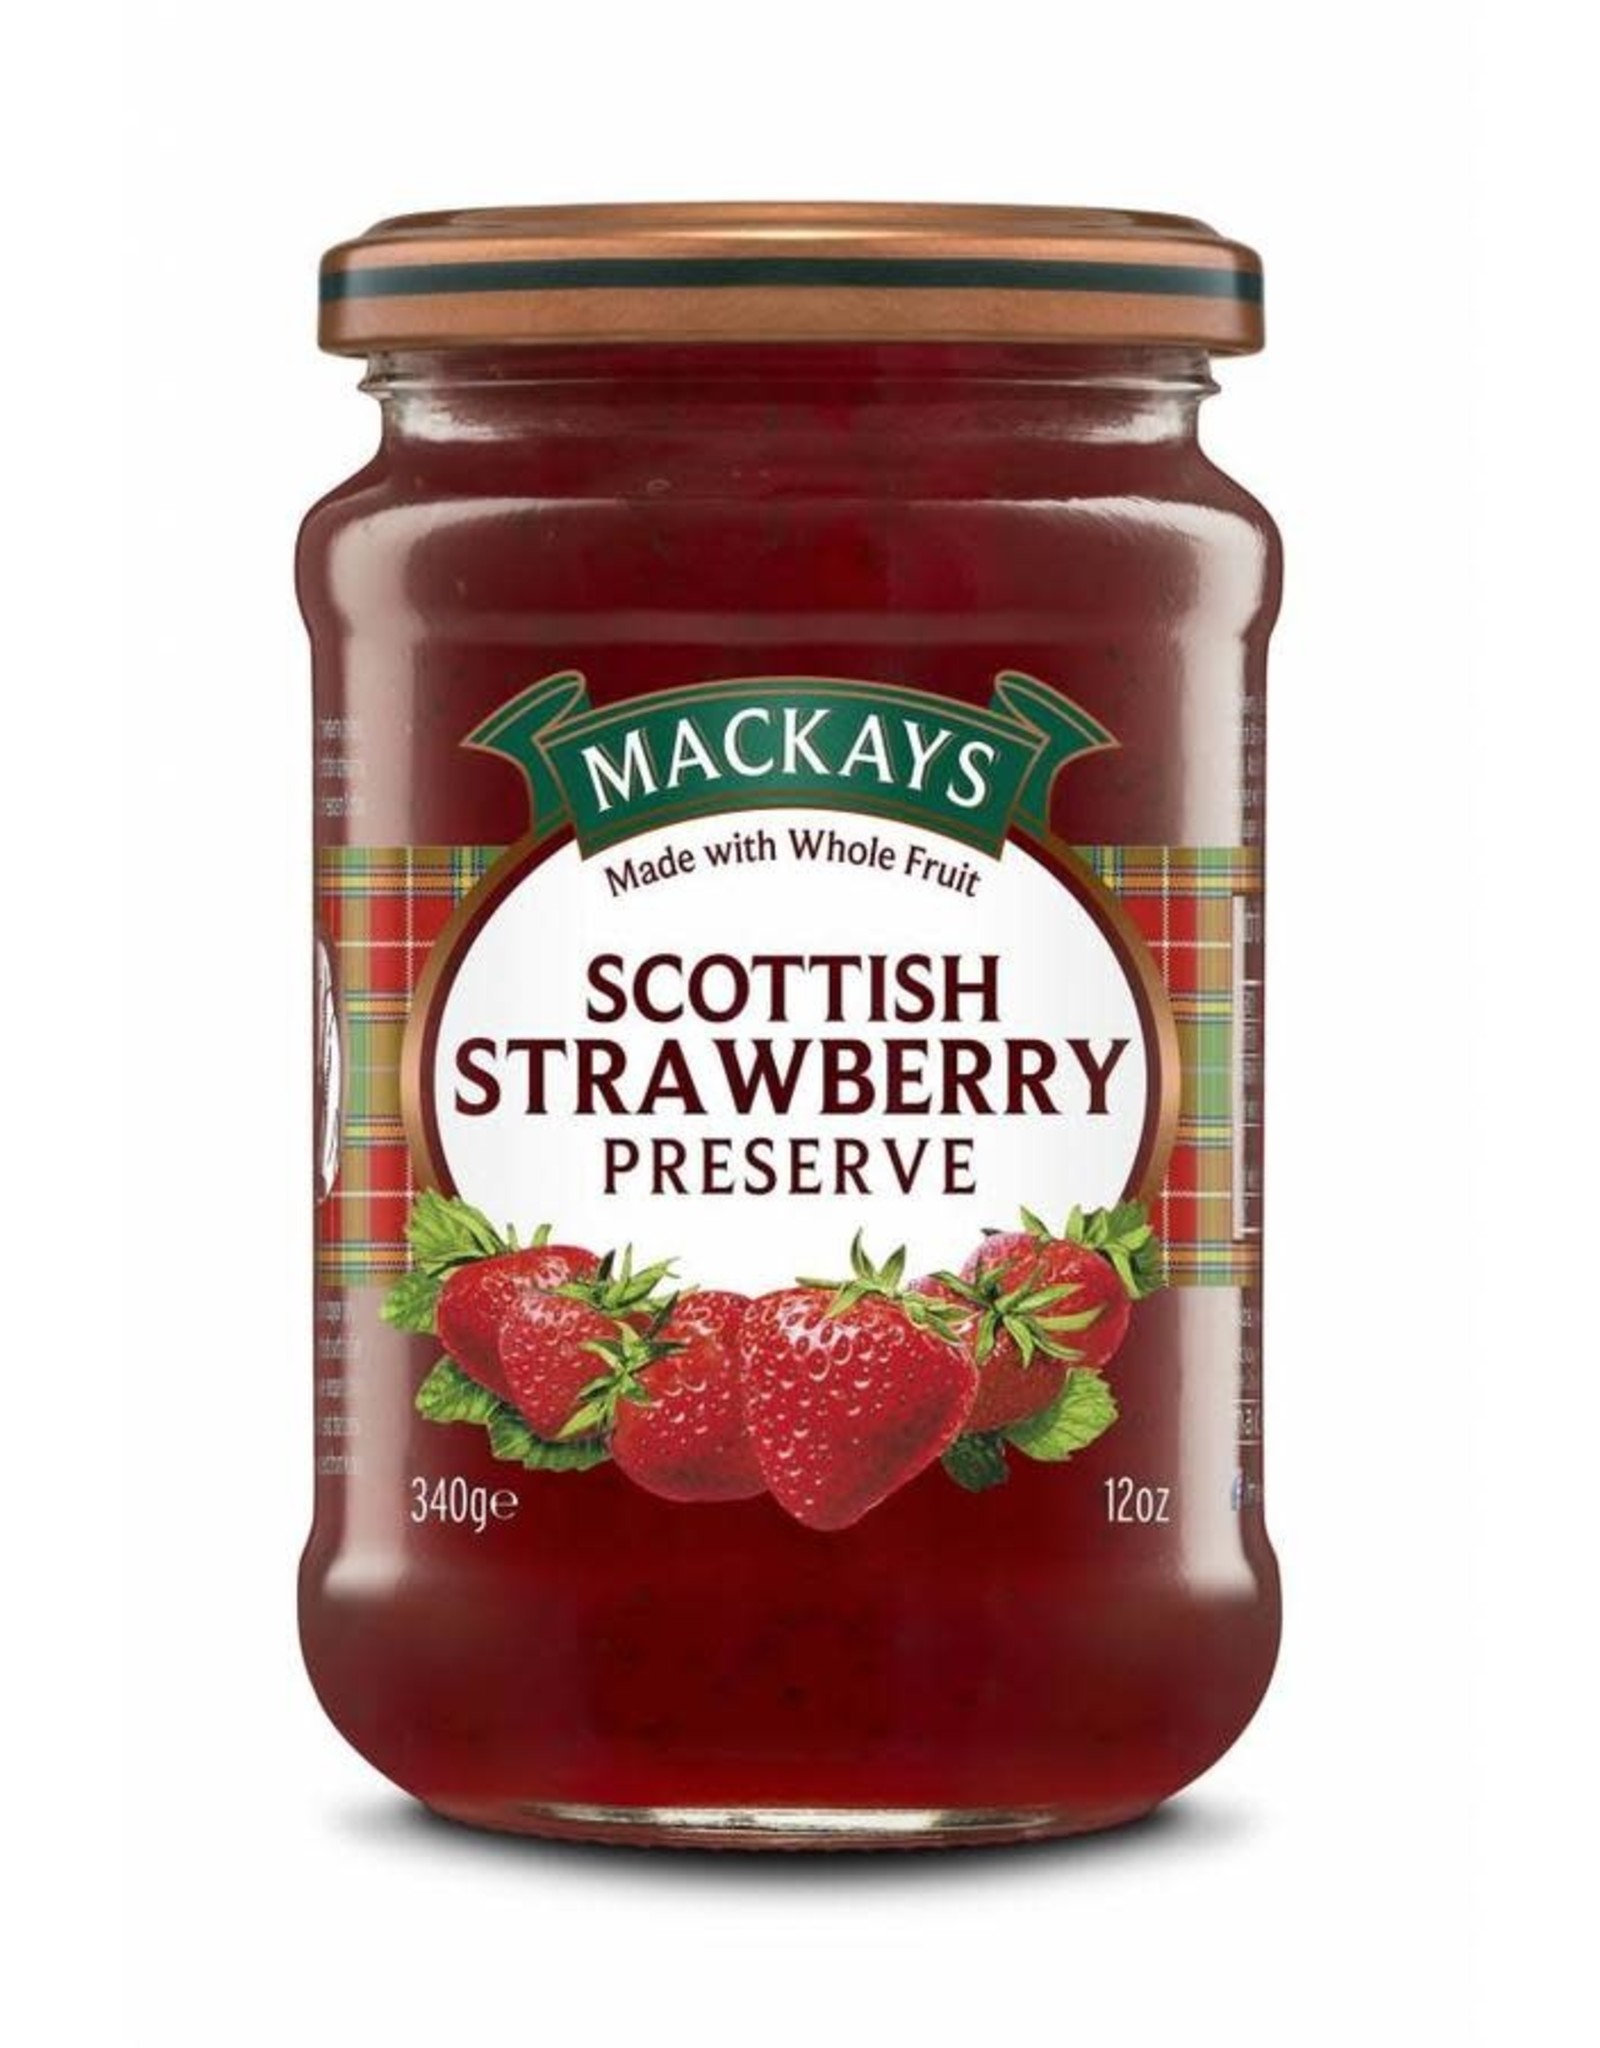 Mackays Mackay's Scottish Strawberry Preserve